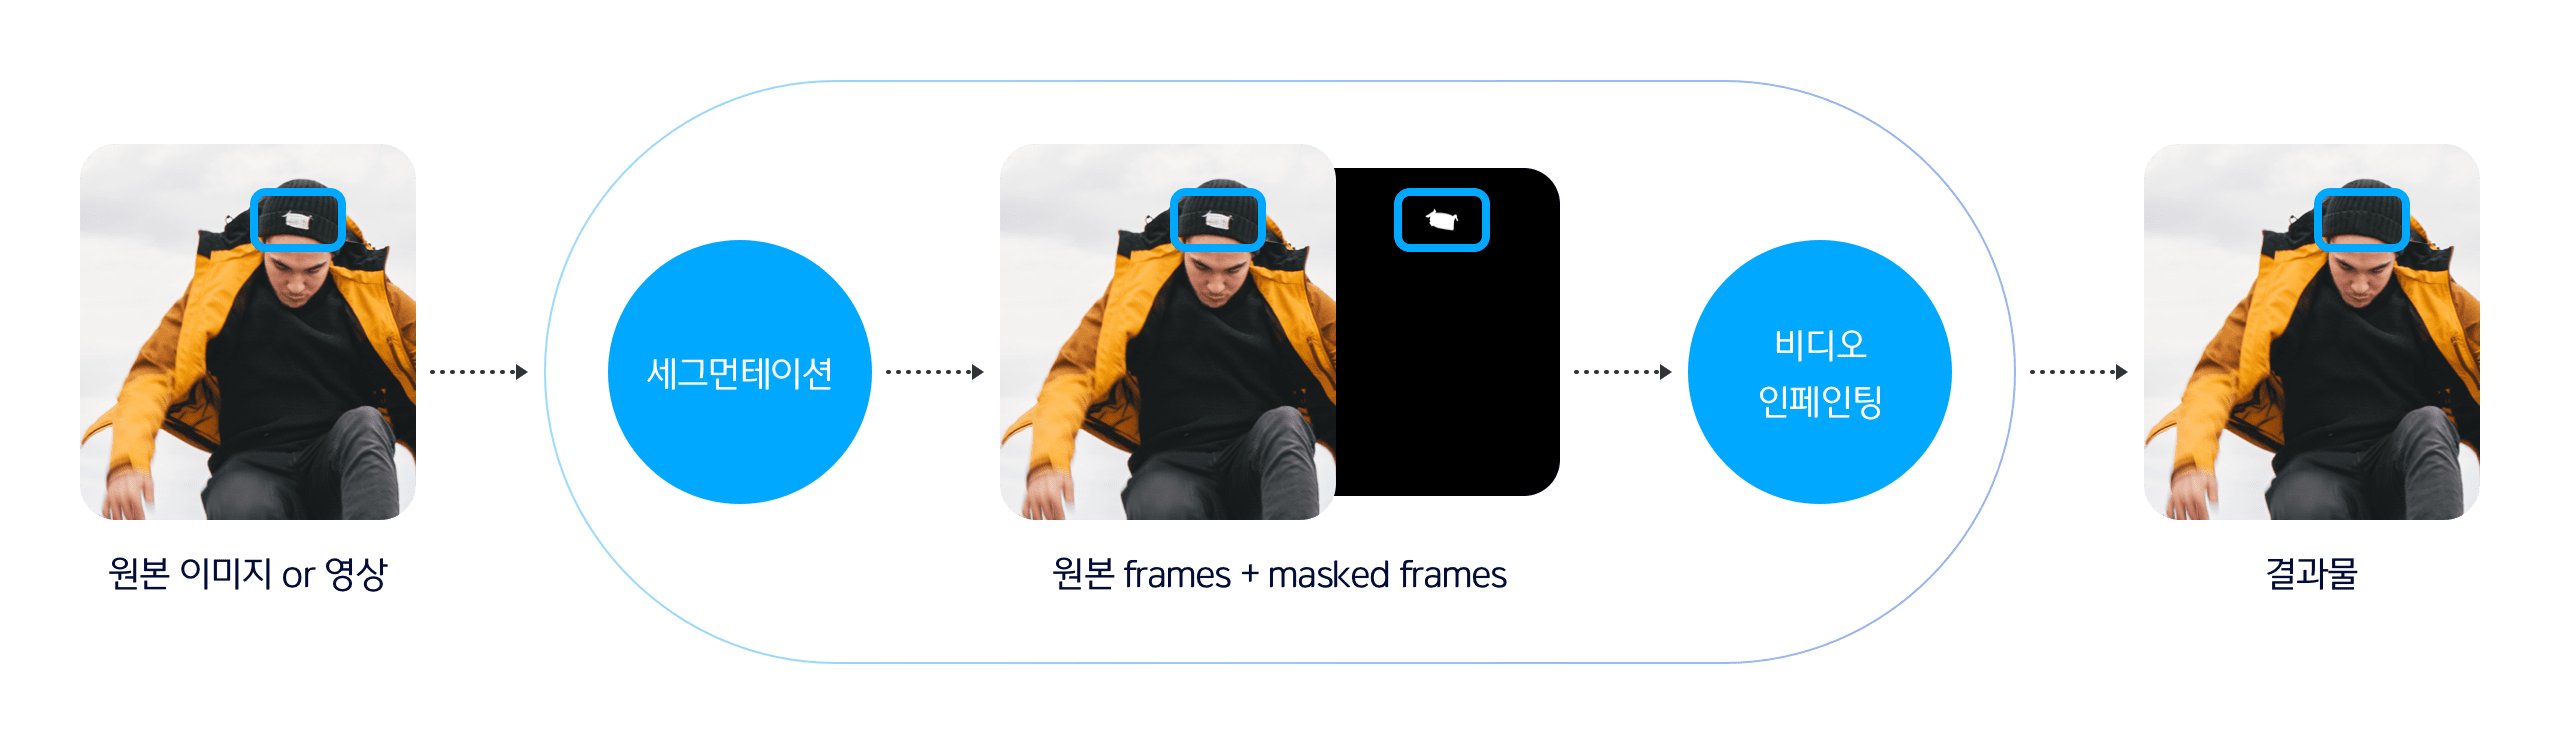 원본 이미지/영상 세그먼테이션, 원본 frames과 masked frames 비디오 인페이팅, 결과물 출력